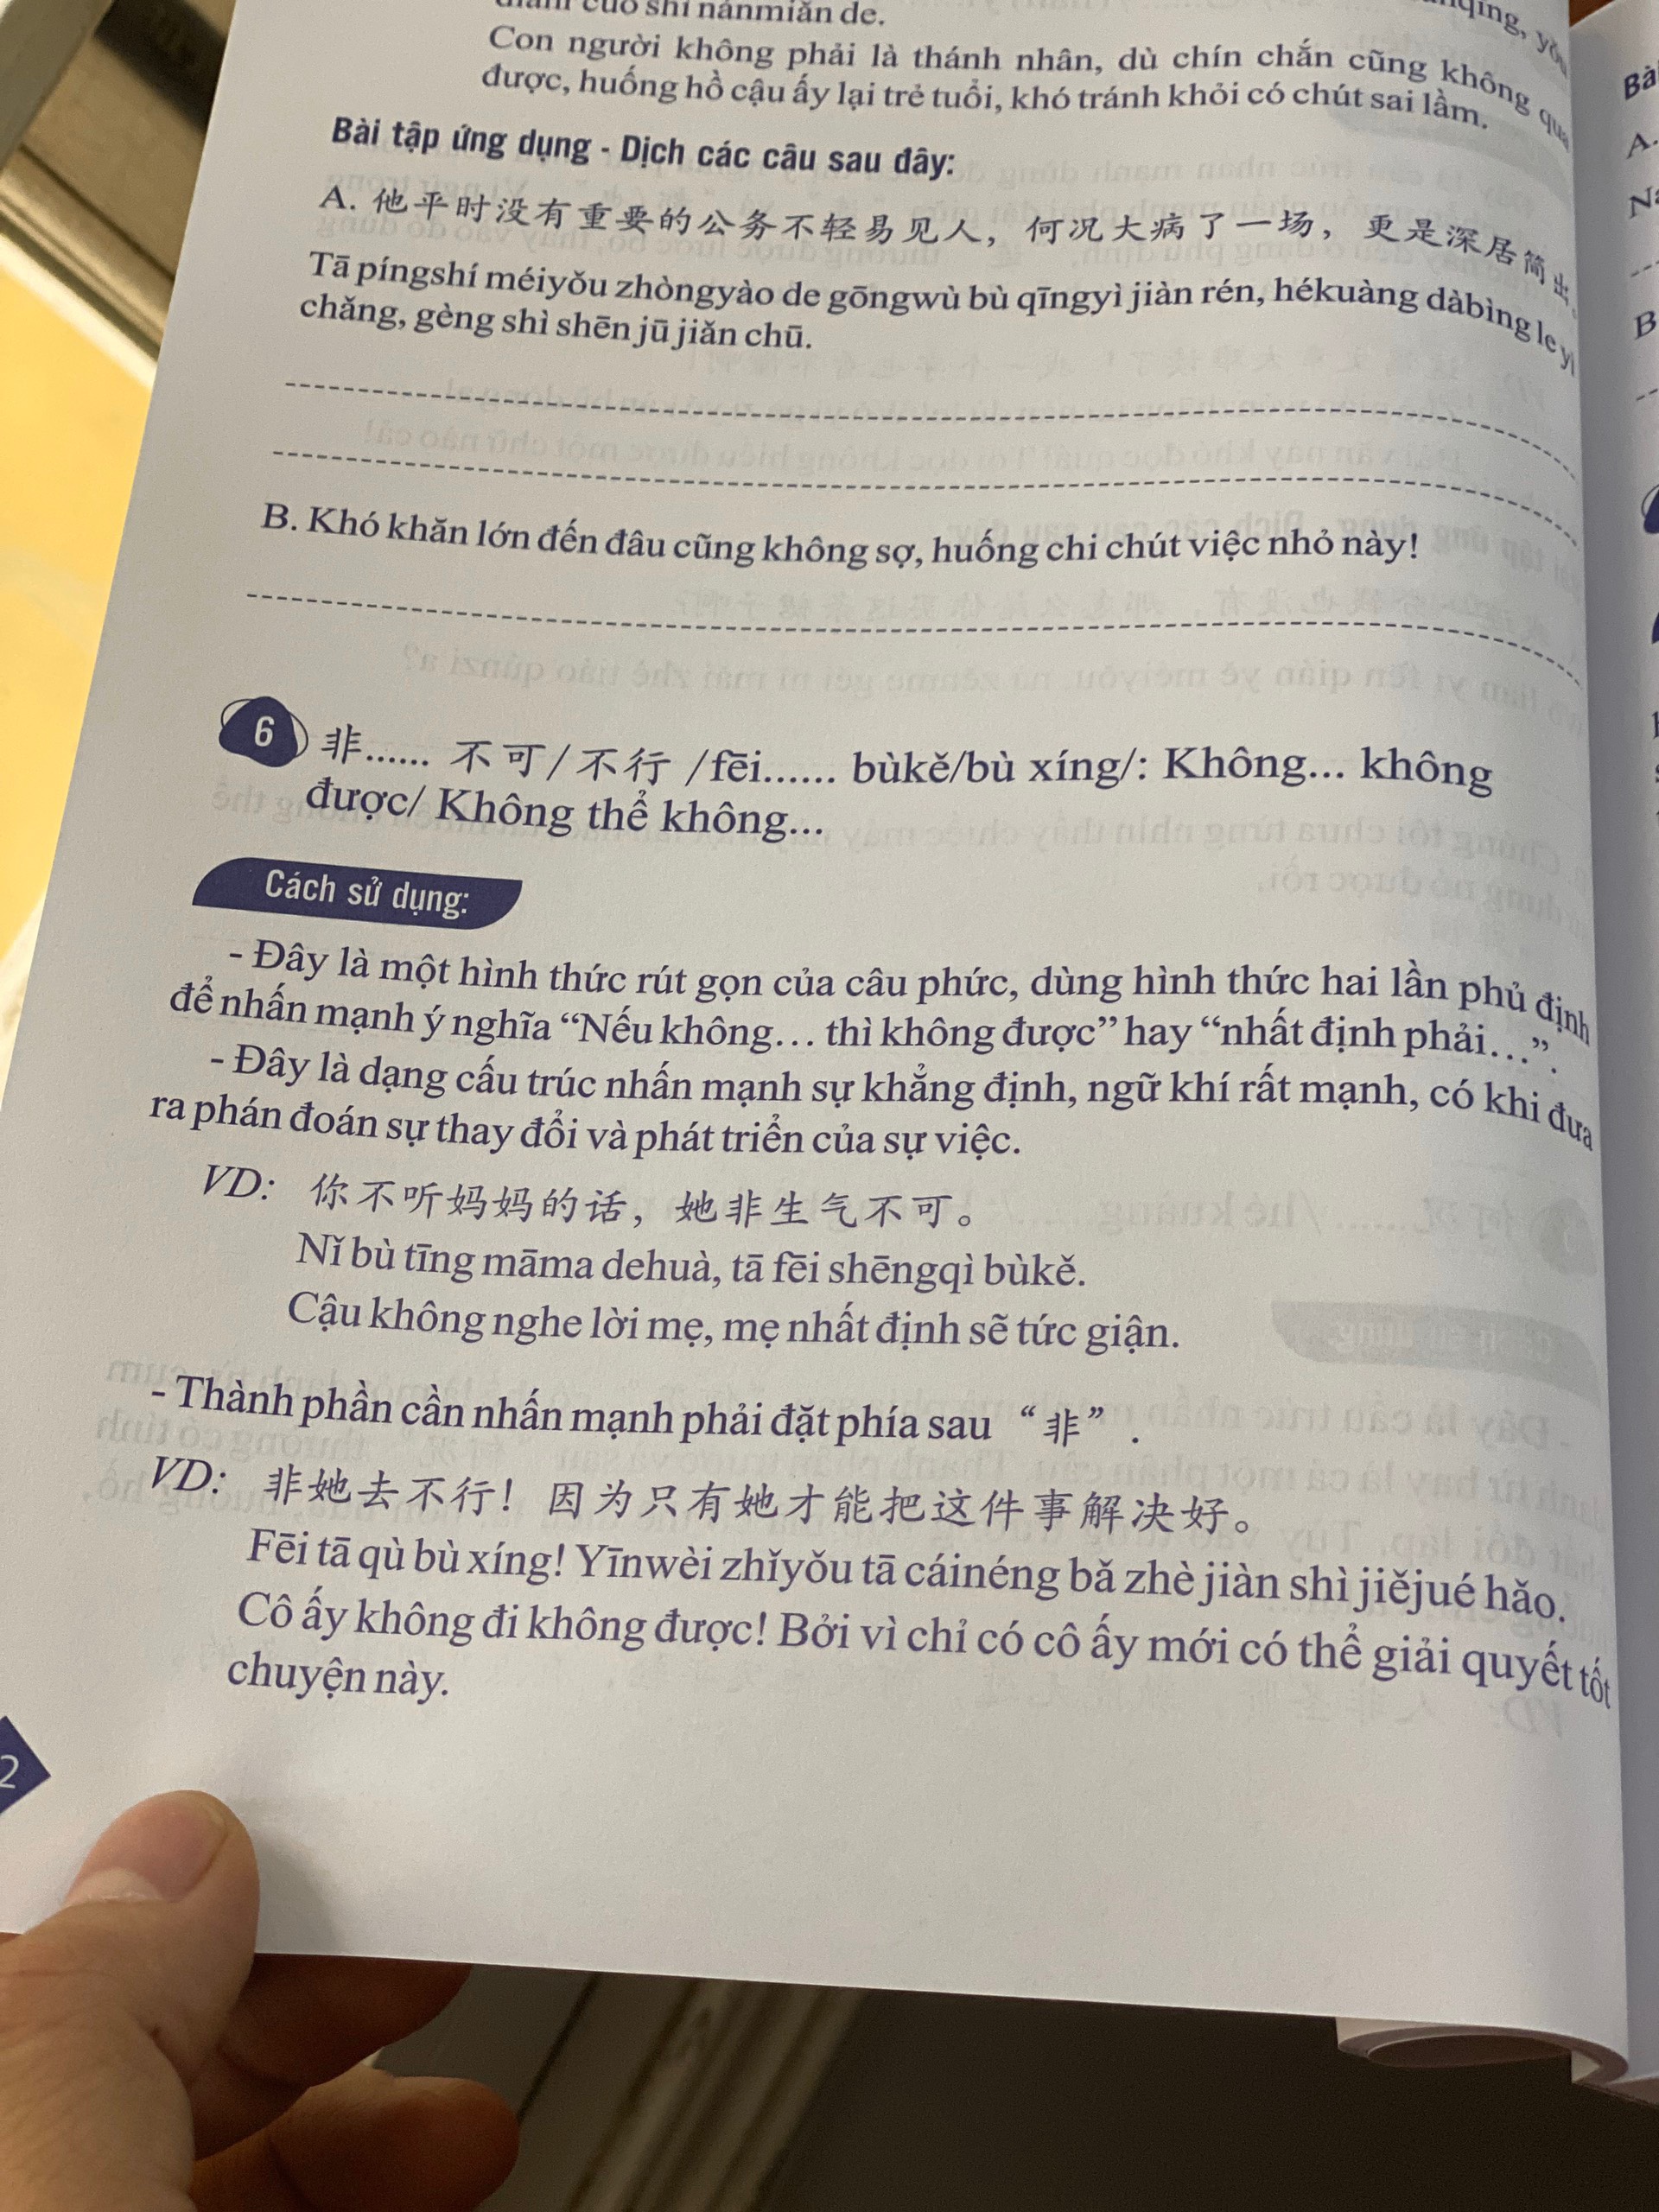 Sách - combo: Phân biệt và giải thích các điểm ngữ pháp Tiếng Trung hay sử dụng sai Tập 1 +Tuyển tập cấu trúc cố định tiếng Trung ứng dụng +DVD tài liệu